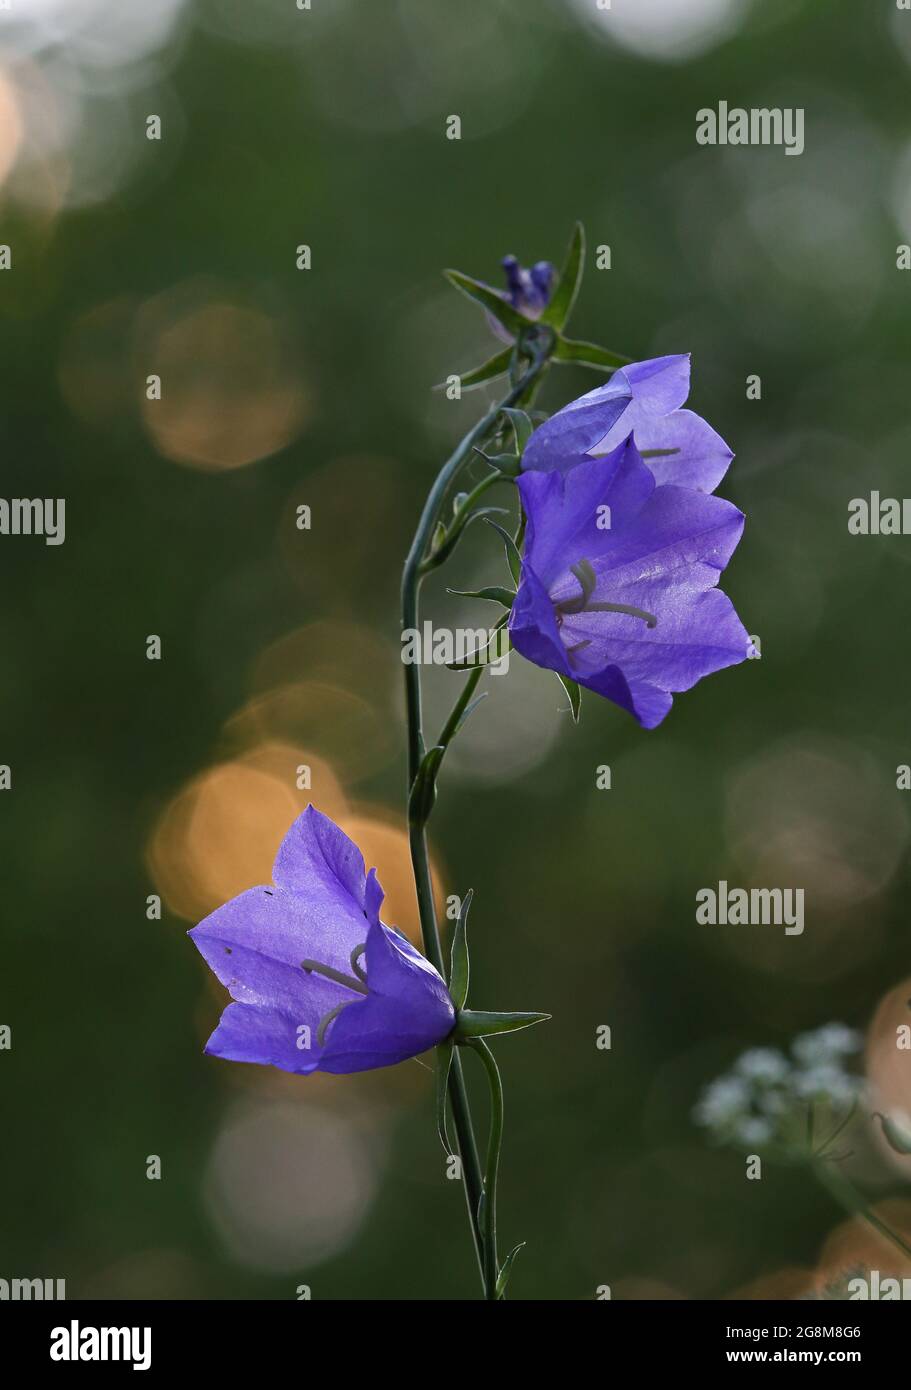 De belles fleurs en papier bleu fleurissent dans la lumière du soir Banque D'Images